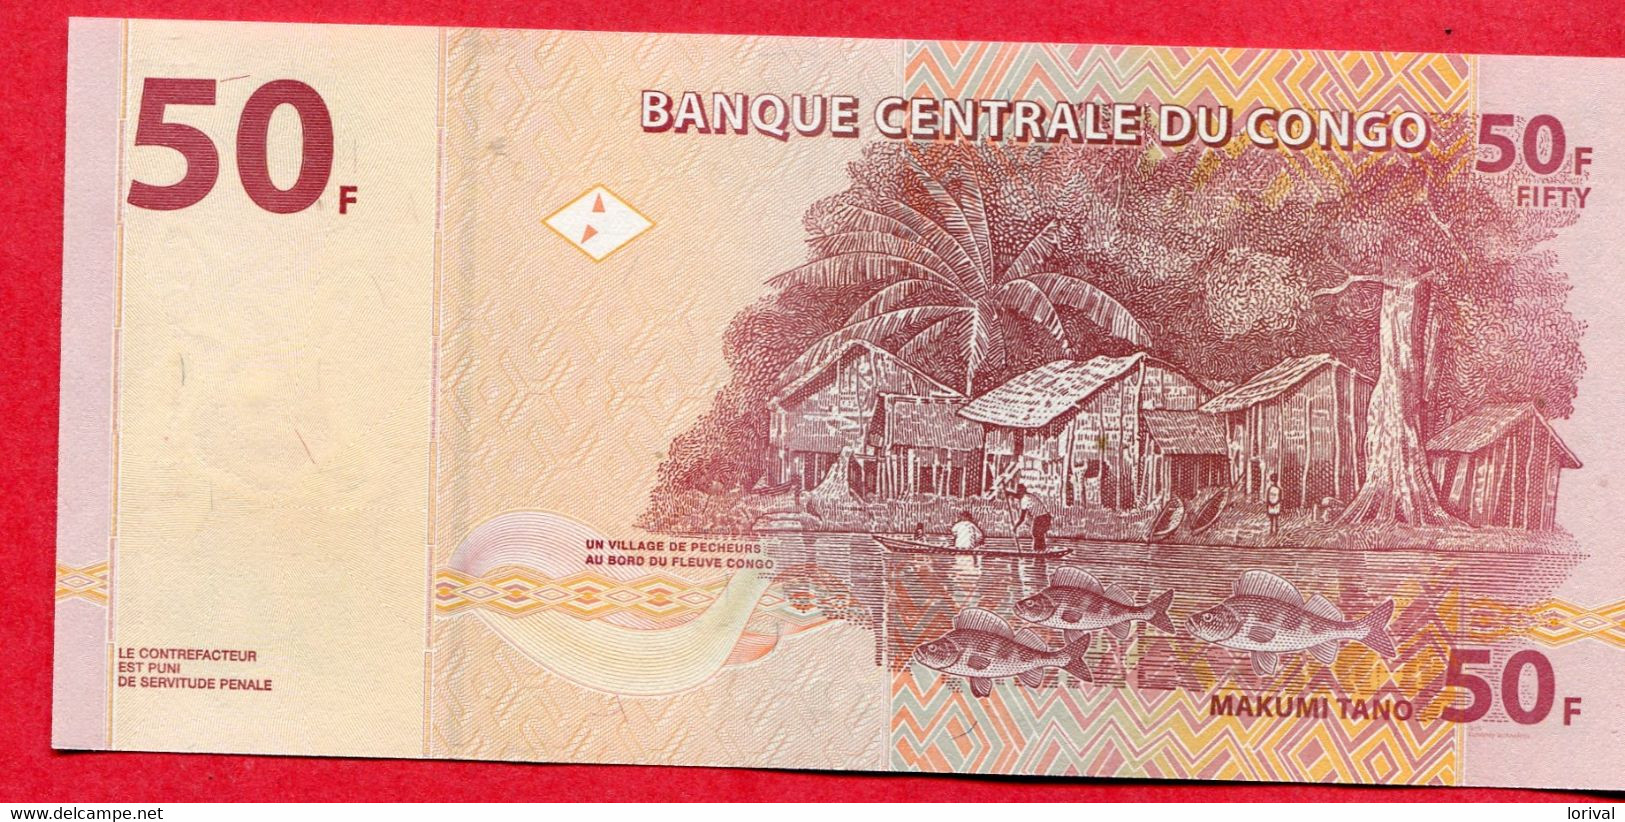 50 Franc 2013 Neuf 3 Euros - Republic Of Congo (Congo-Brazzaville)